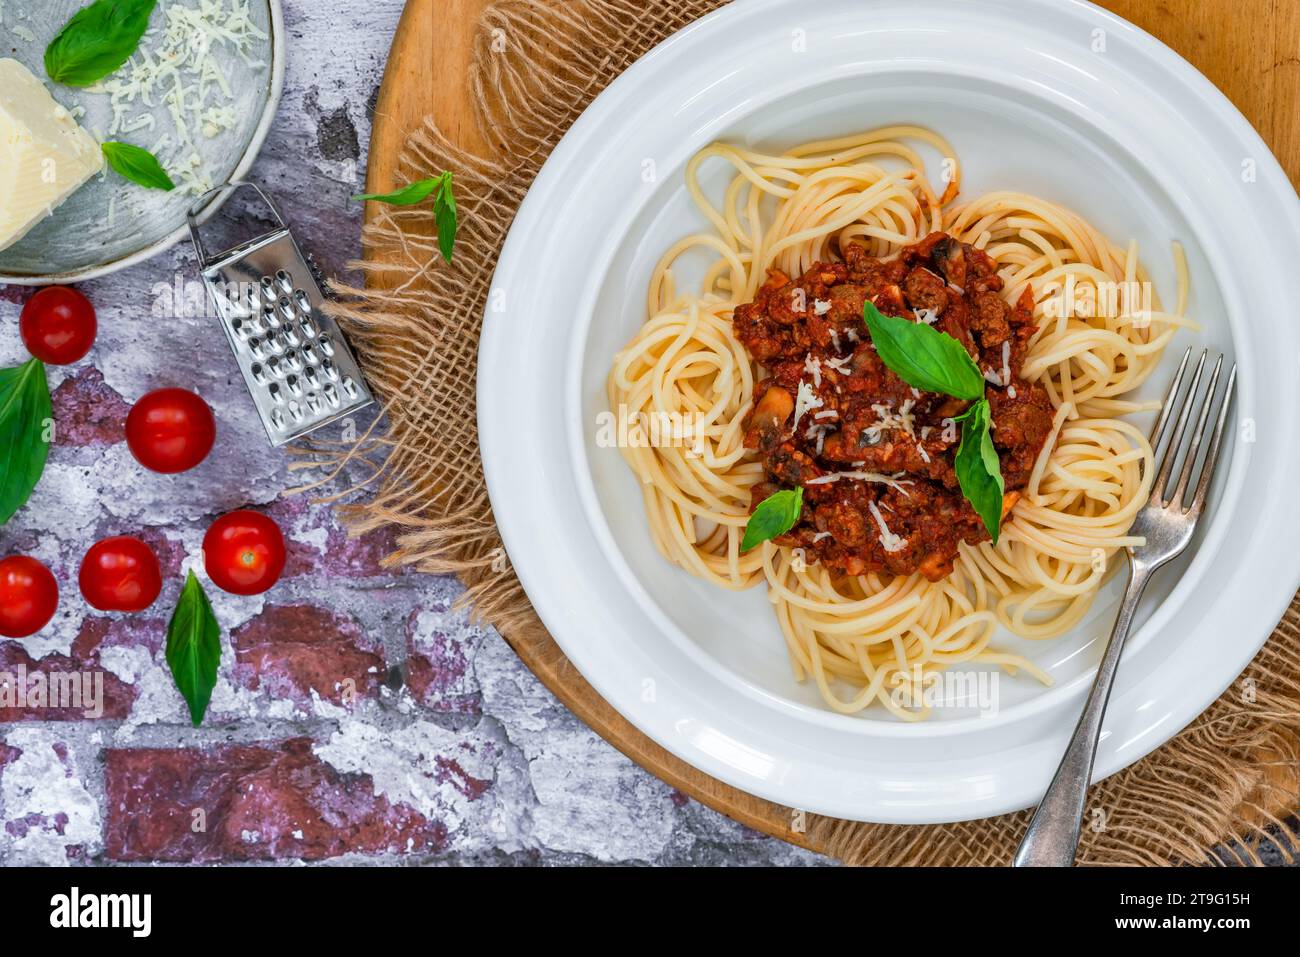 Spaghetti vegetariani senza carne alla bolognese con macina di corna Foto Stock